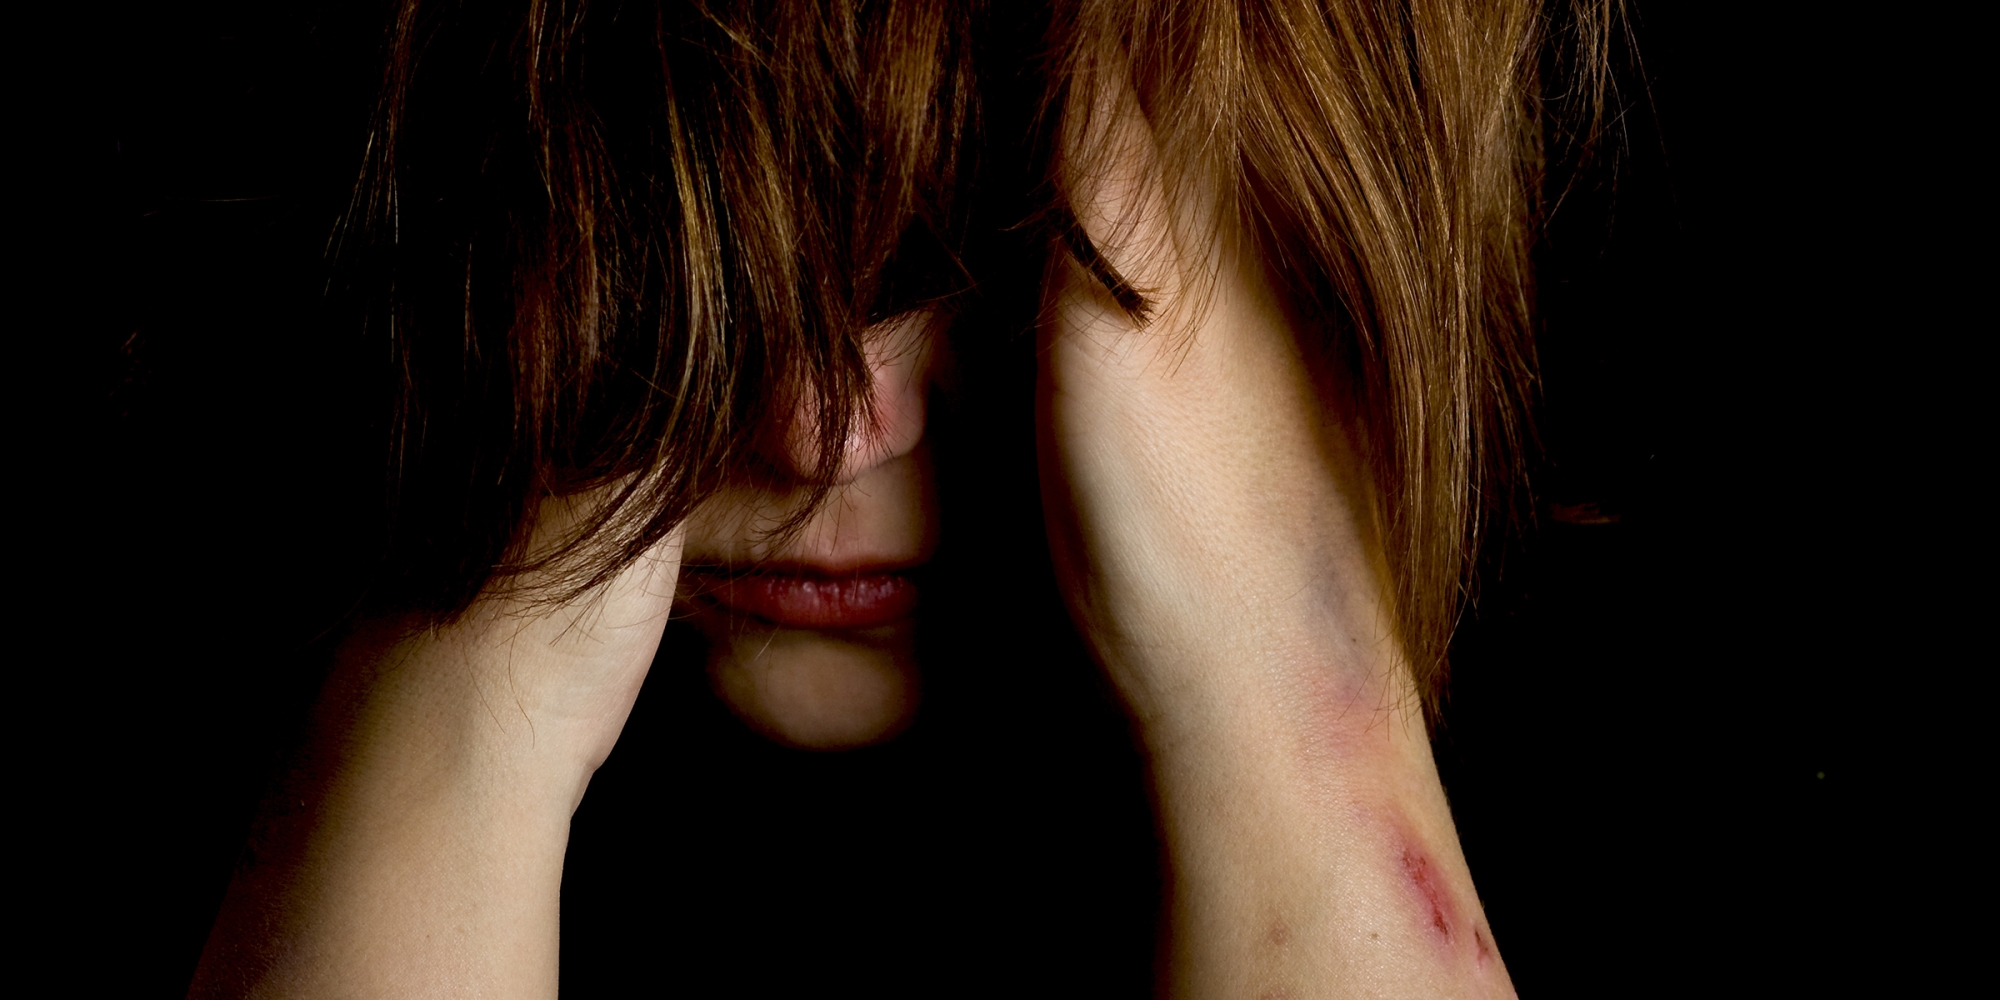 Jente som skjuler ansiktet med hår, skader på armen.